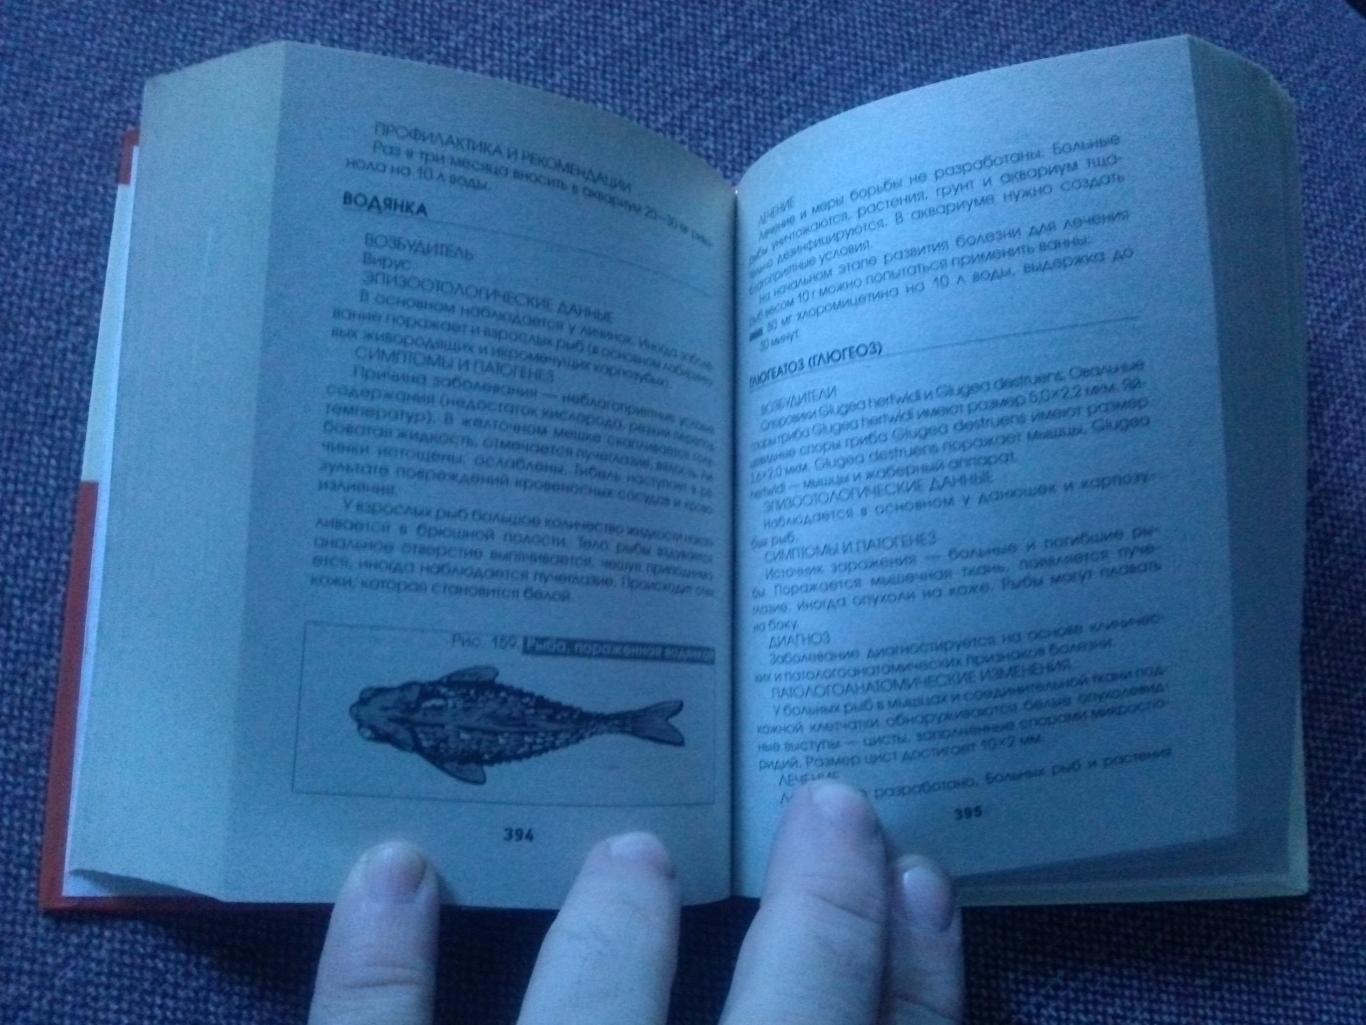 Полная энциклопедия аквариумиста (карманная) 2009 г. Аквариум Аквариумные рыбки 7